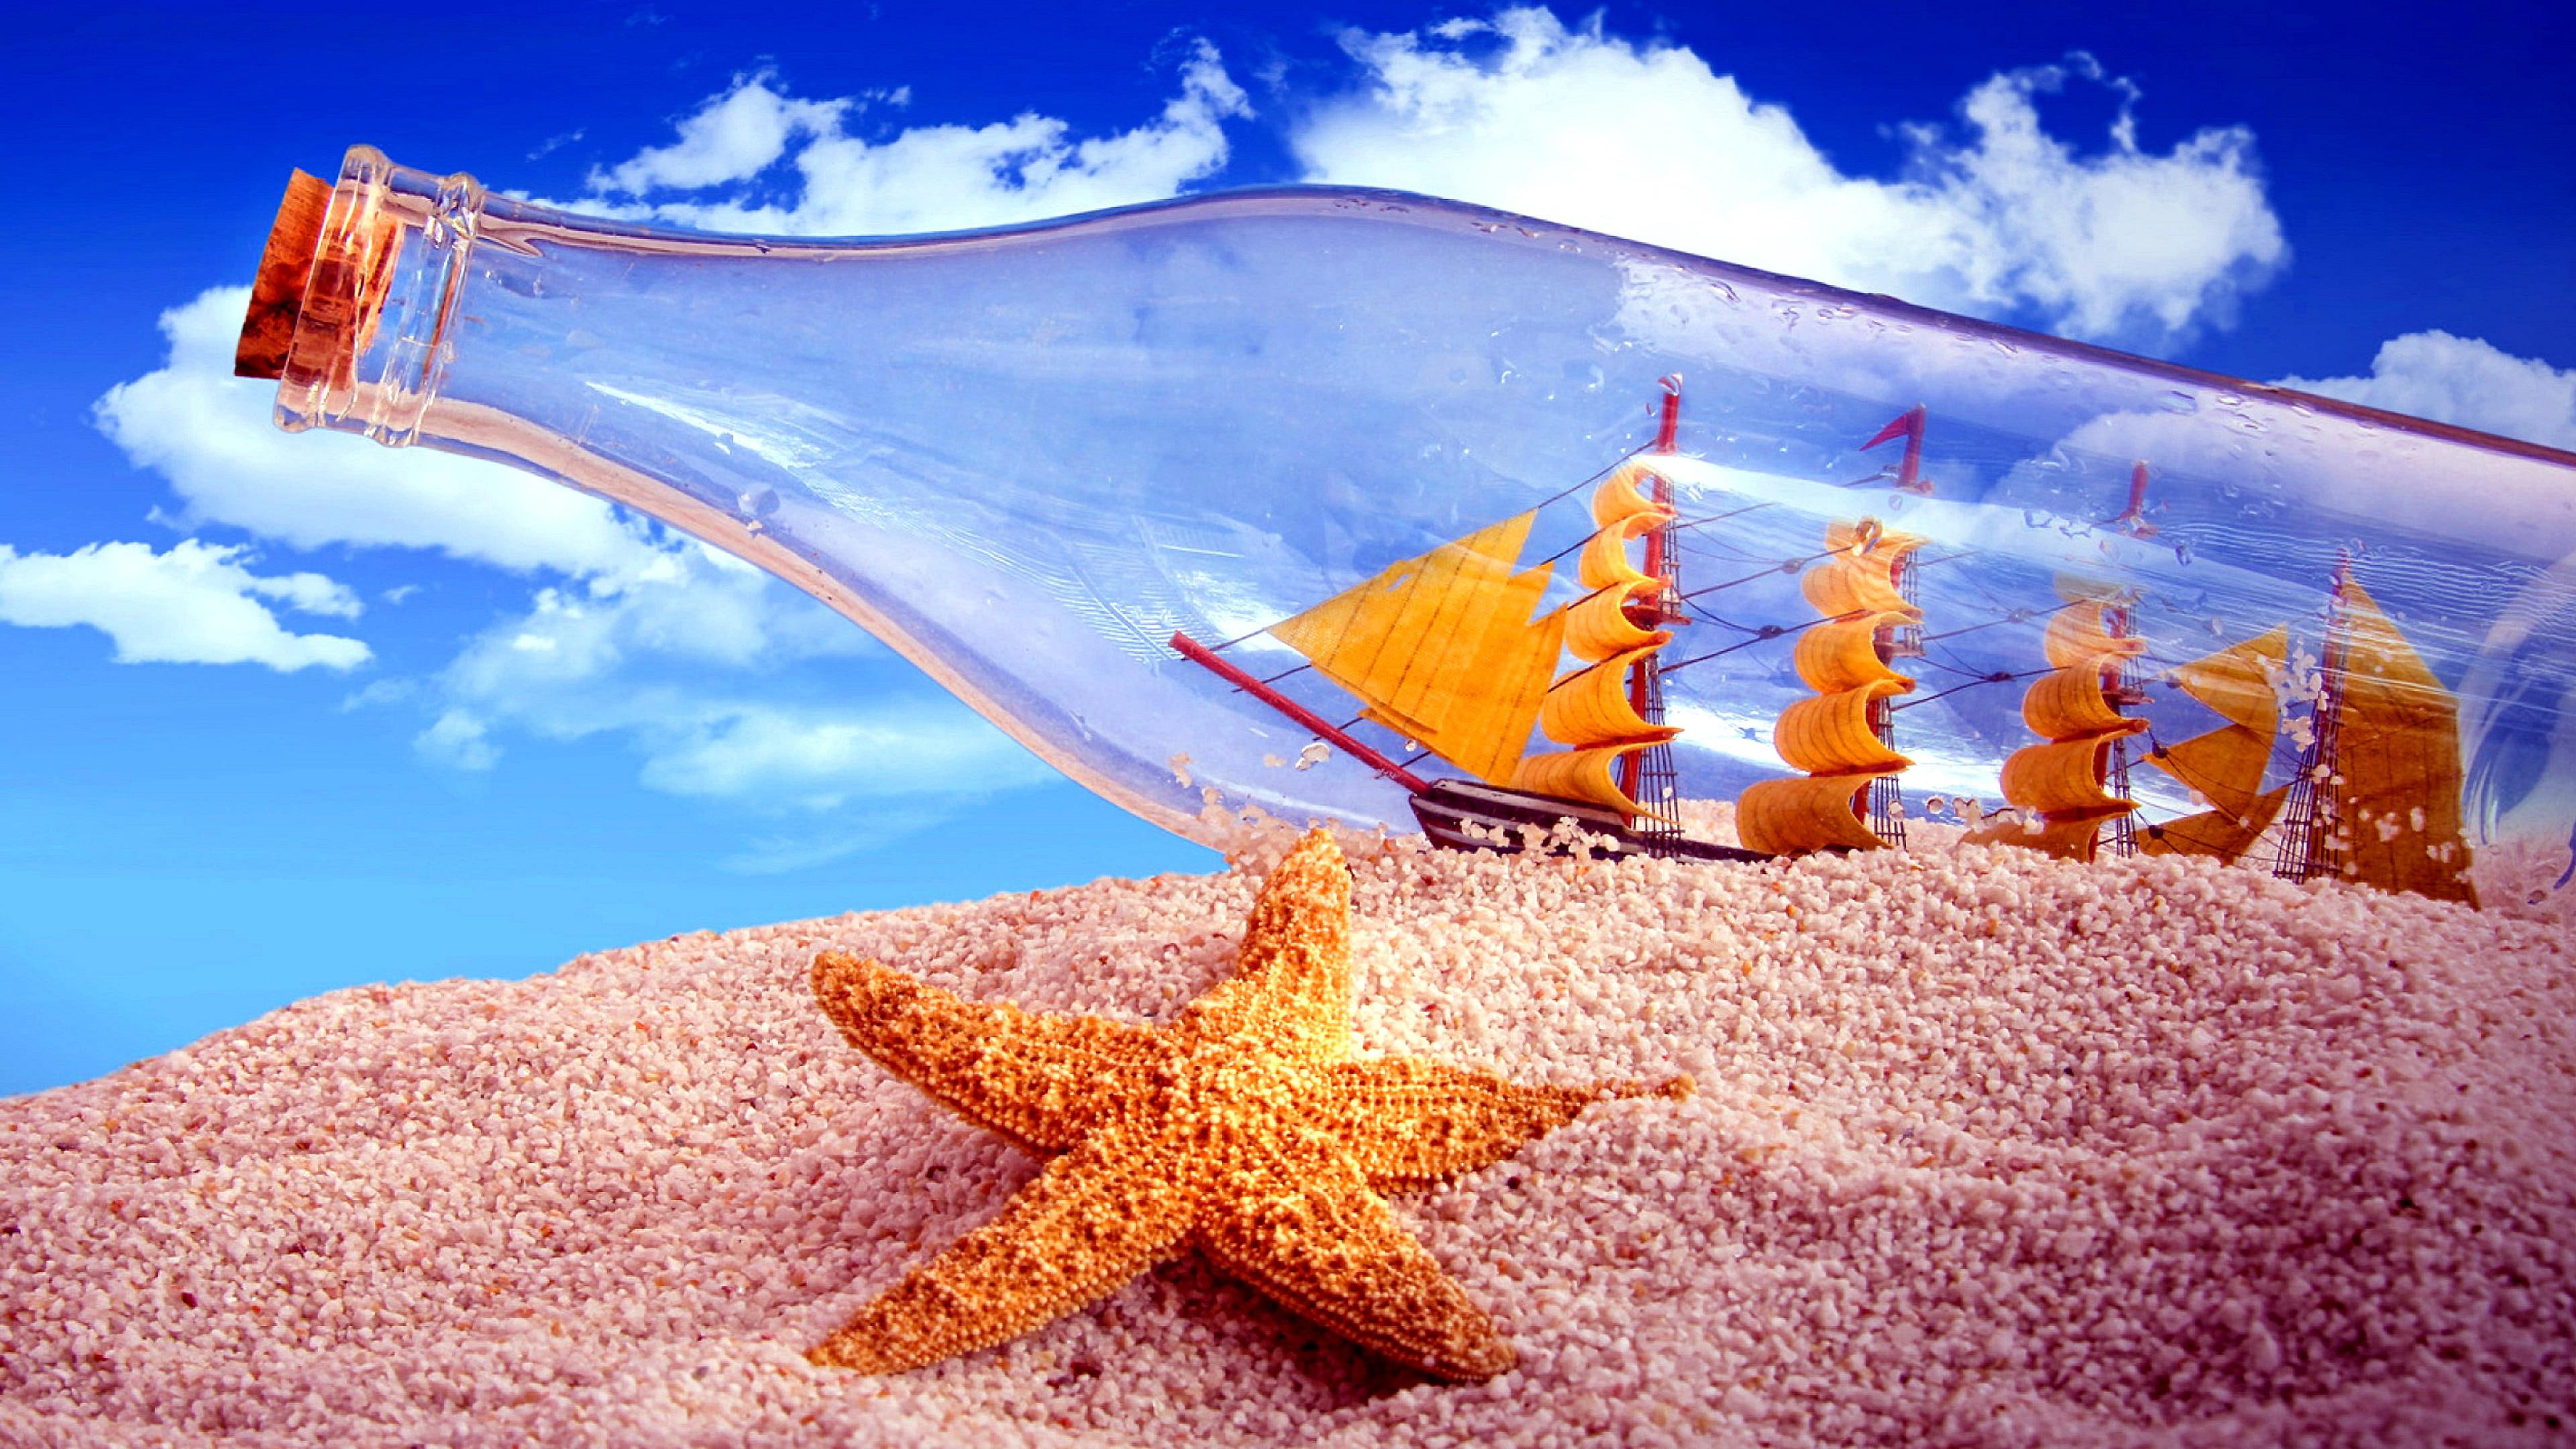 starfish, sand, buttle, buttle world, ship, sky, fantasy world